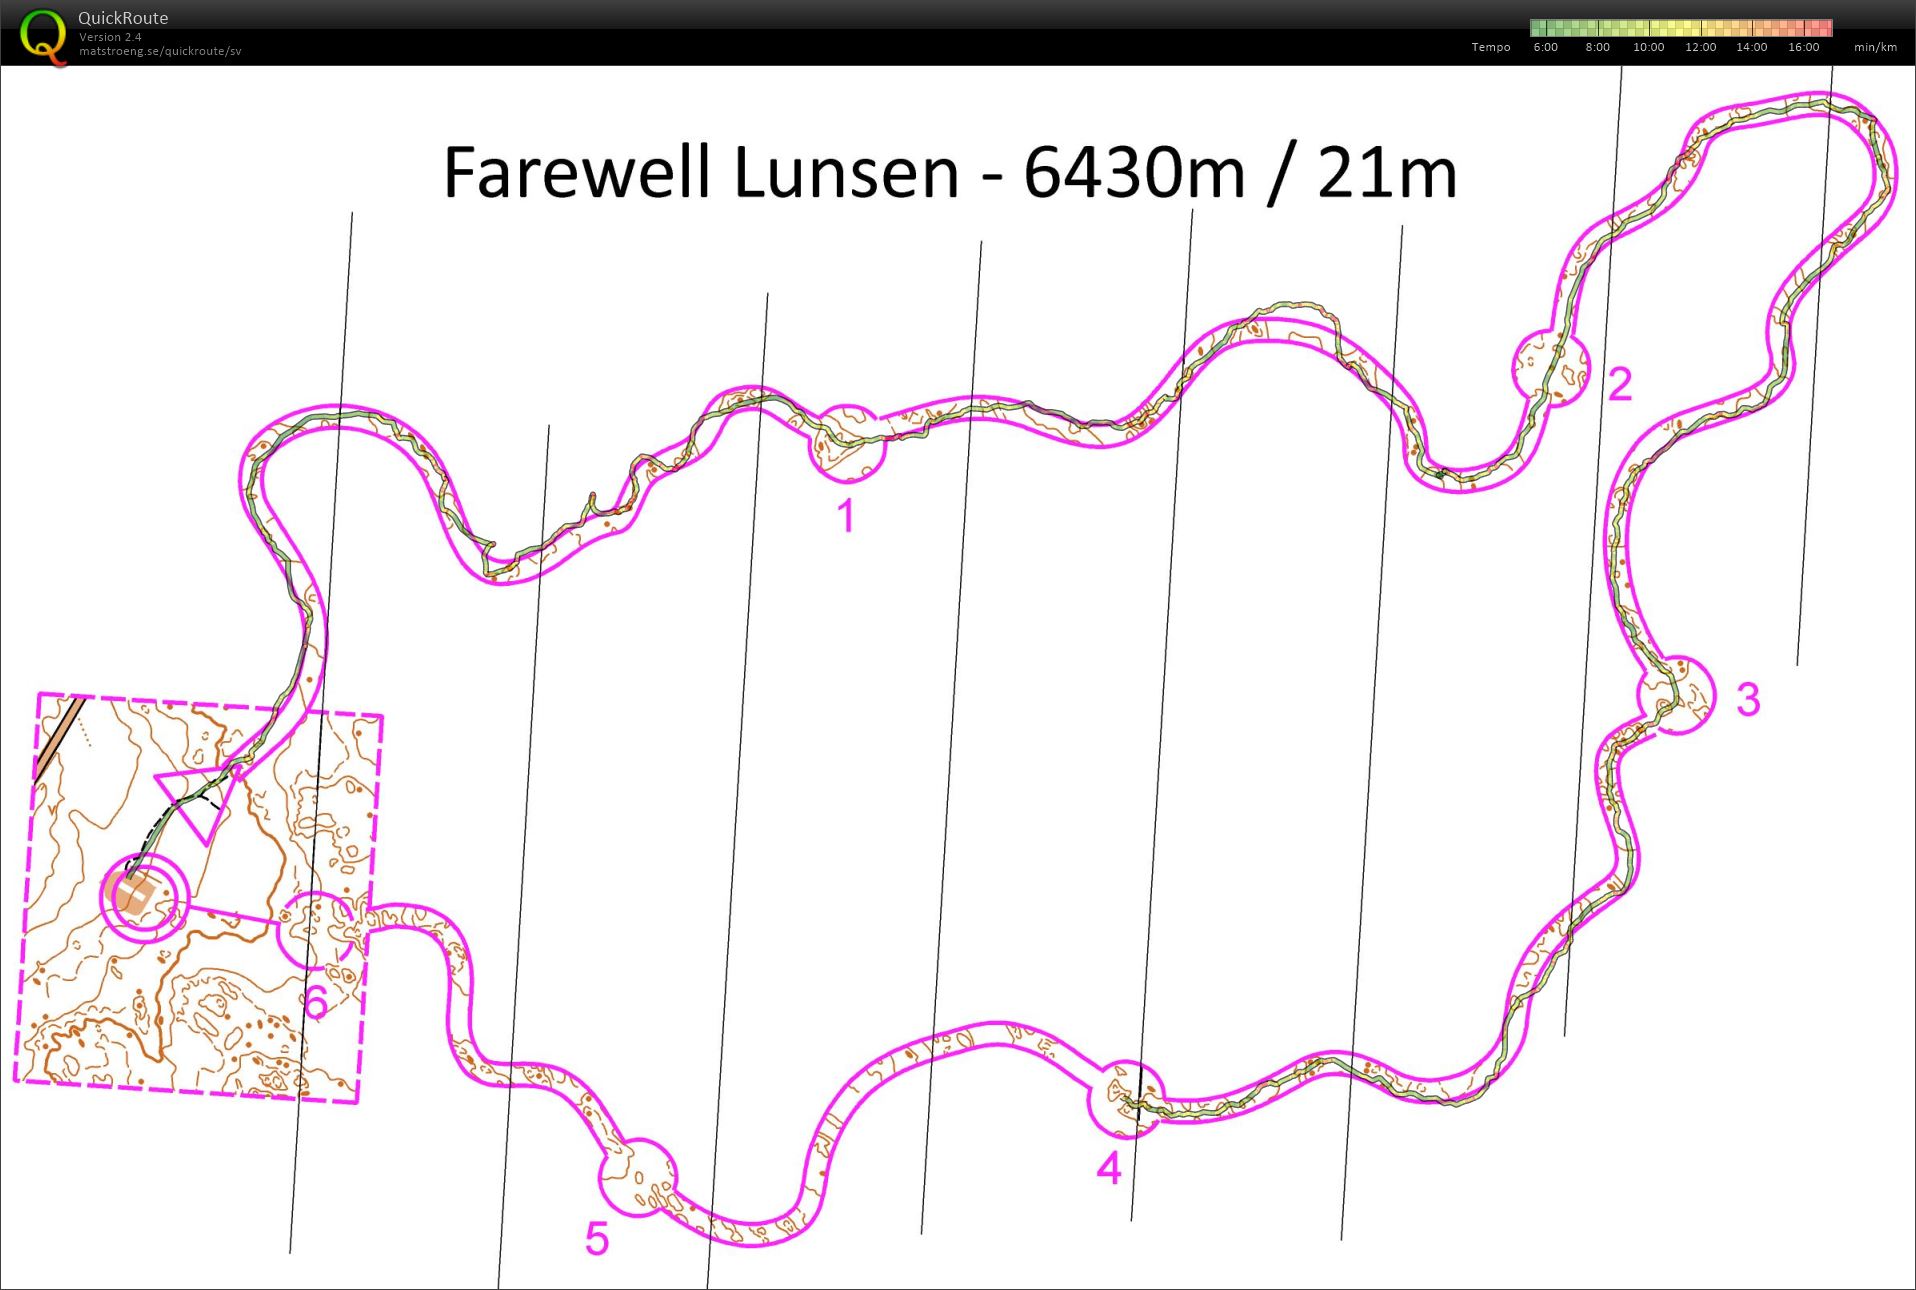 Farewell Lunsen (2015-12-26)